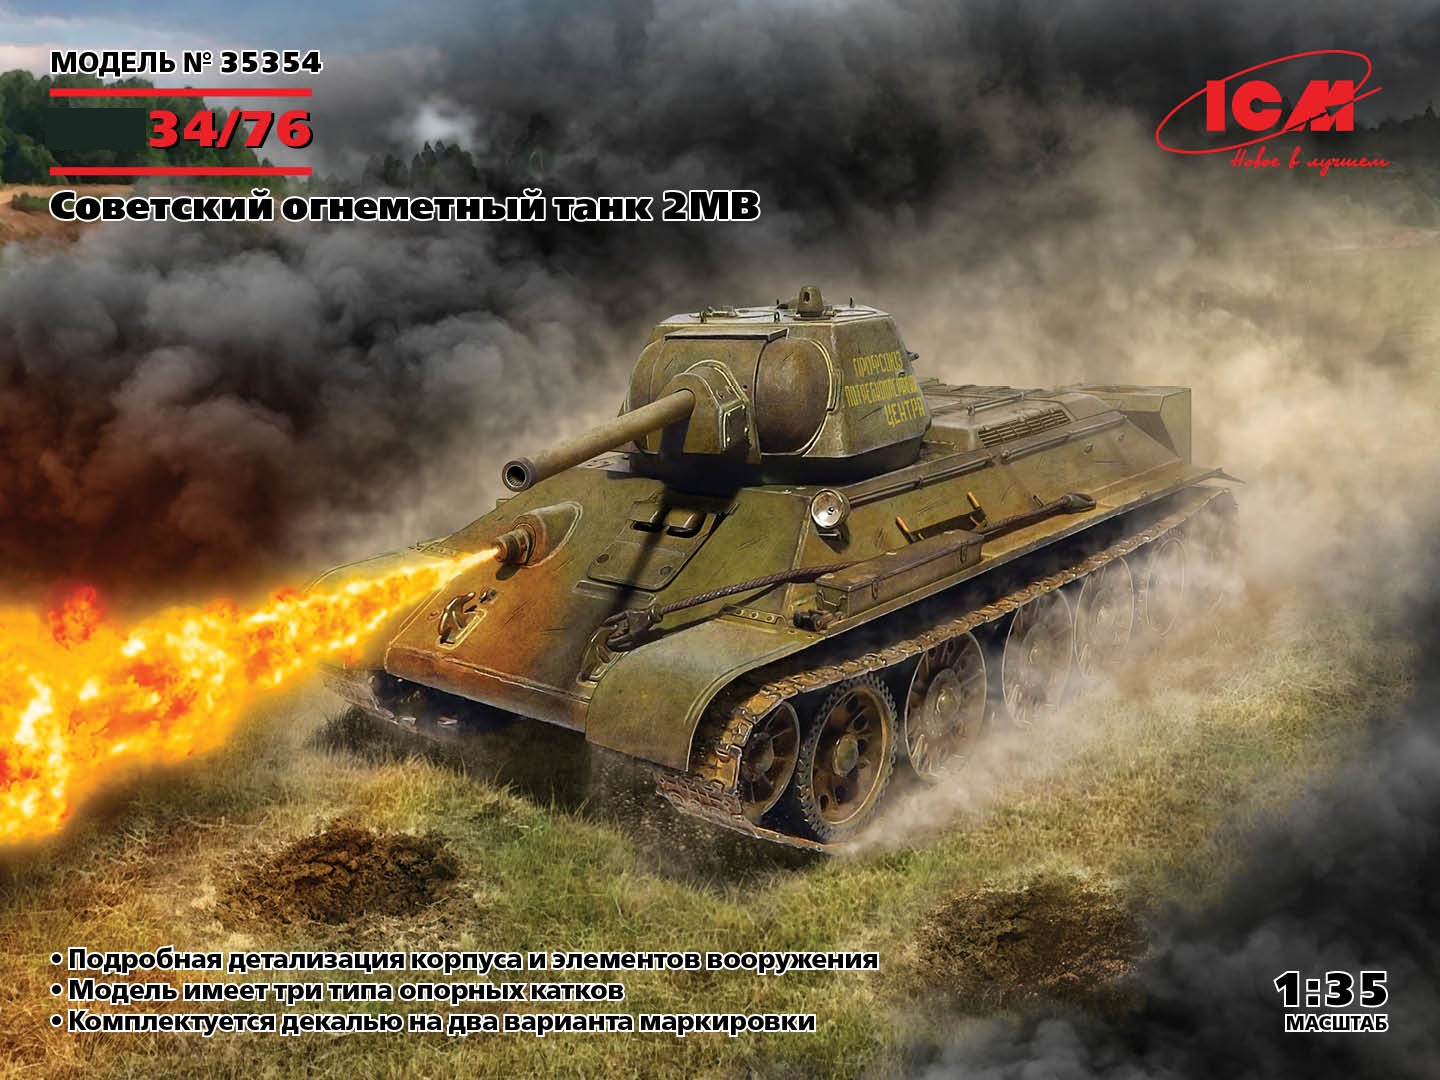 35354  техника и вооружение  Огнемётный танк-34/76 WWII Soviet flamethrower tank  (1:35)